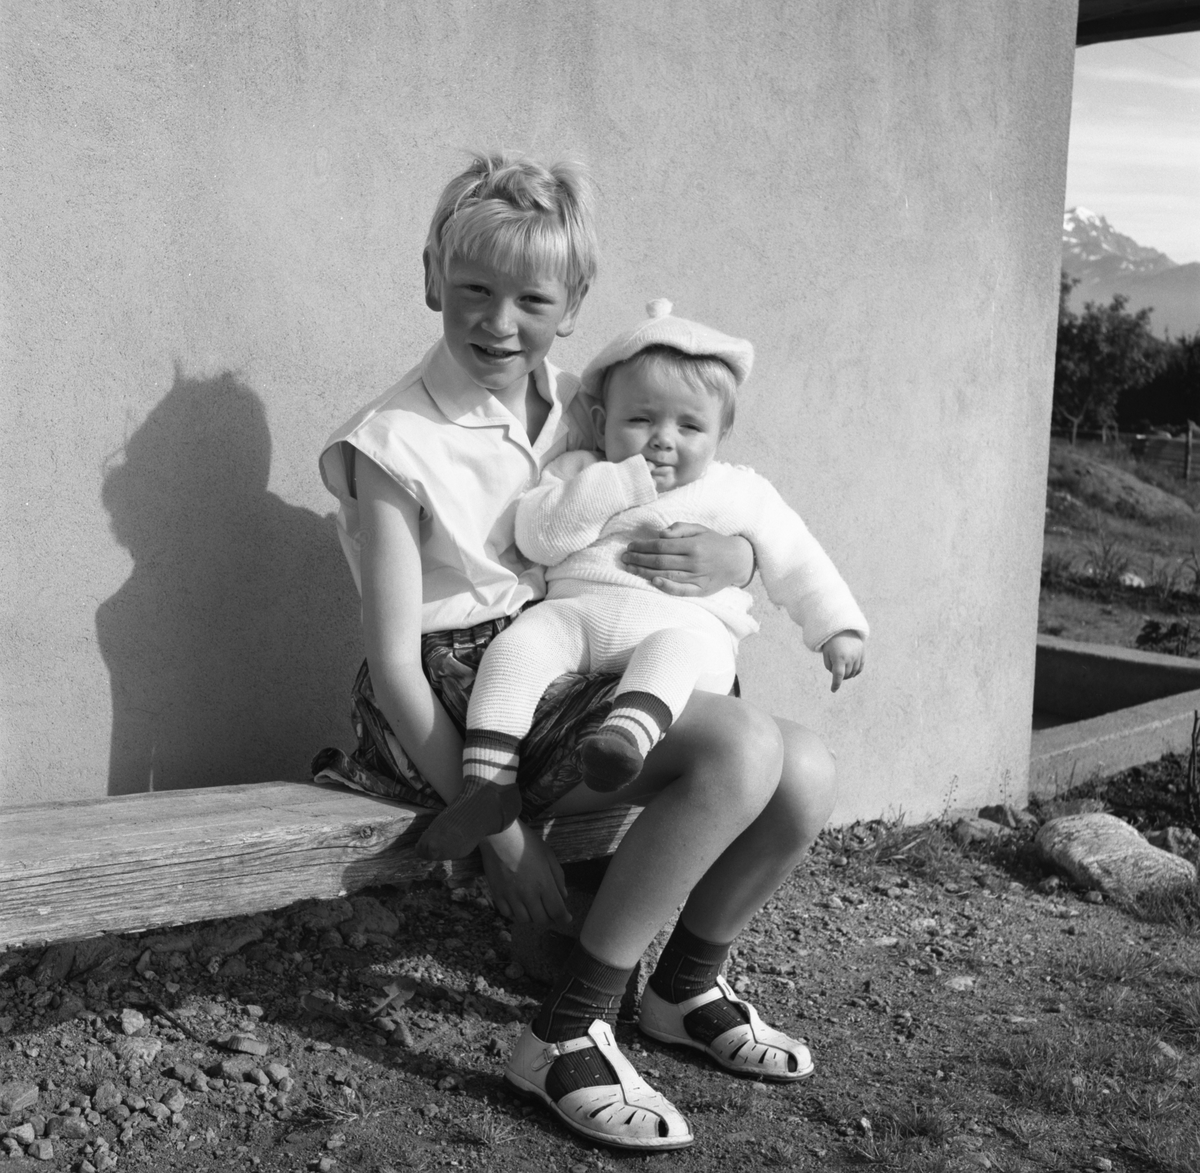 Portrettfotografi av ei jente med en baby på fanget utenfor et hus. Bjørg og Frode?